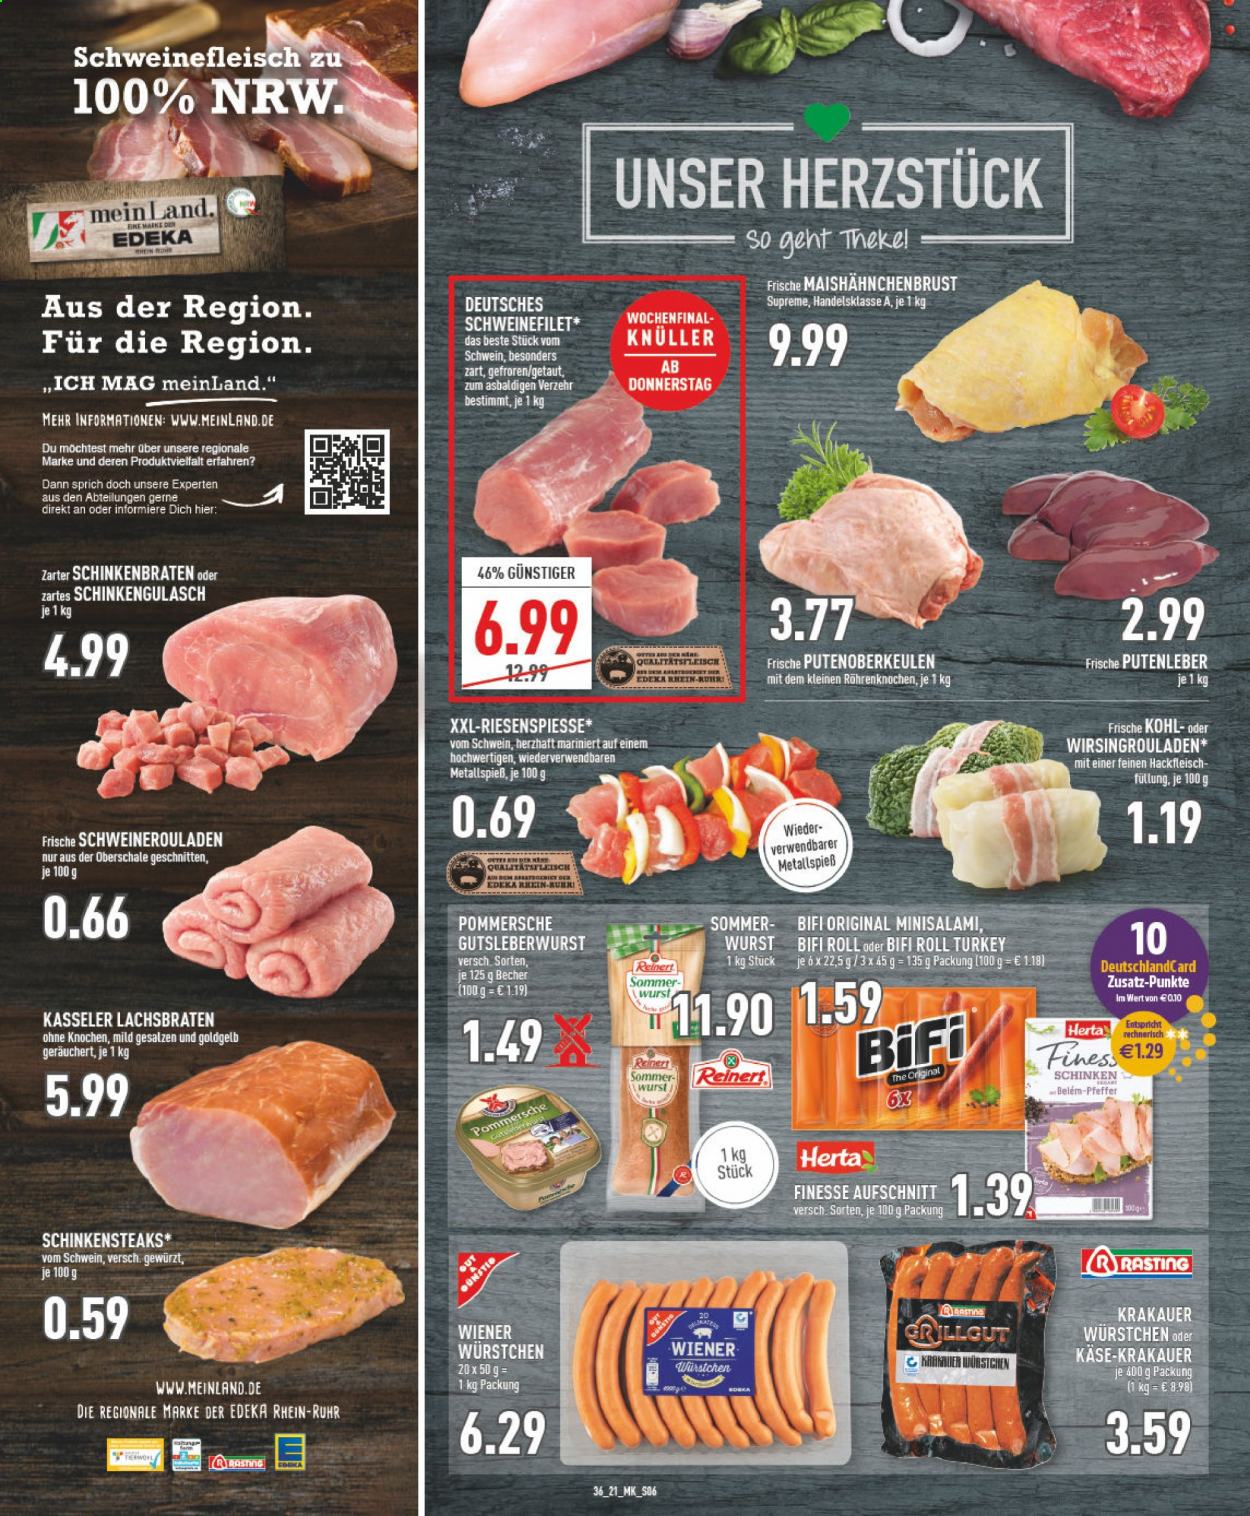 thumbnail - Prospekte Marktkauf - 6.09.2021 - 11.09.2021 - Produkte in Aktion - Hackfleisch, Schweinehackfleisch, Schweinegulasch, Schweineroulade, Schweinefilet, Lachsbraten, Wurst, Schinken, Mini-Salami, Schinkenbraten, Krakauer, Würstchen, Gutsleberwurst, Wiener Würstchen, Pommersche, Käse. Seite 6.